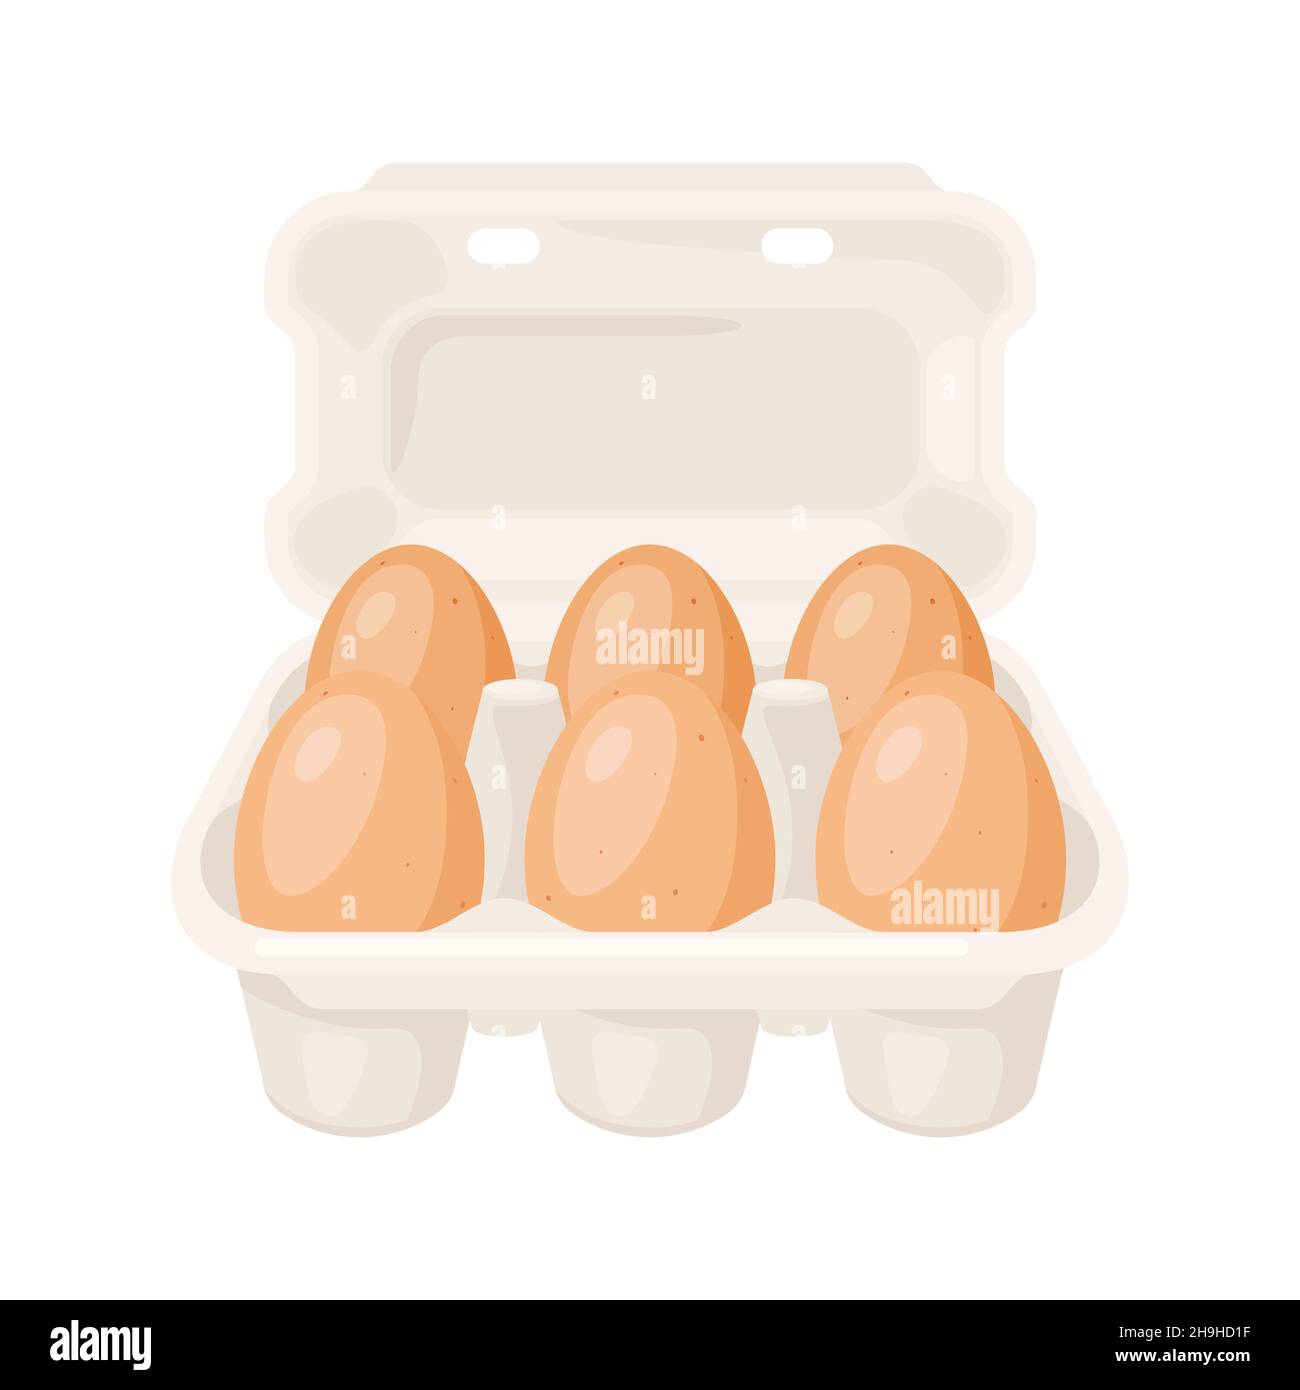 https://c8.alamy.com/compes/2h9hd1f/ilustracion-de-huevos-de-pollo-marrones-en-envase-de-carton-imagen-para-las-industrias-alimentarias-y-agricolas-2h9hd1f.jpg